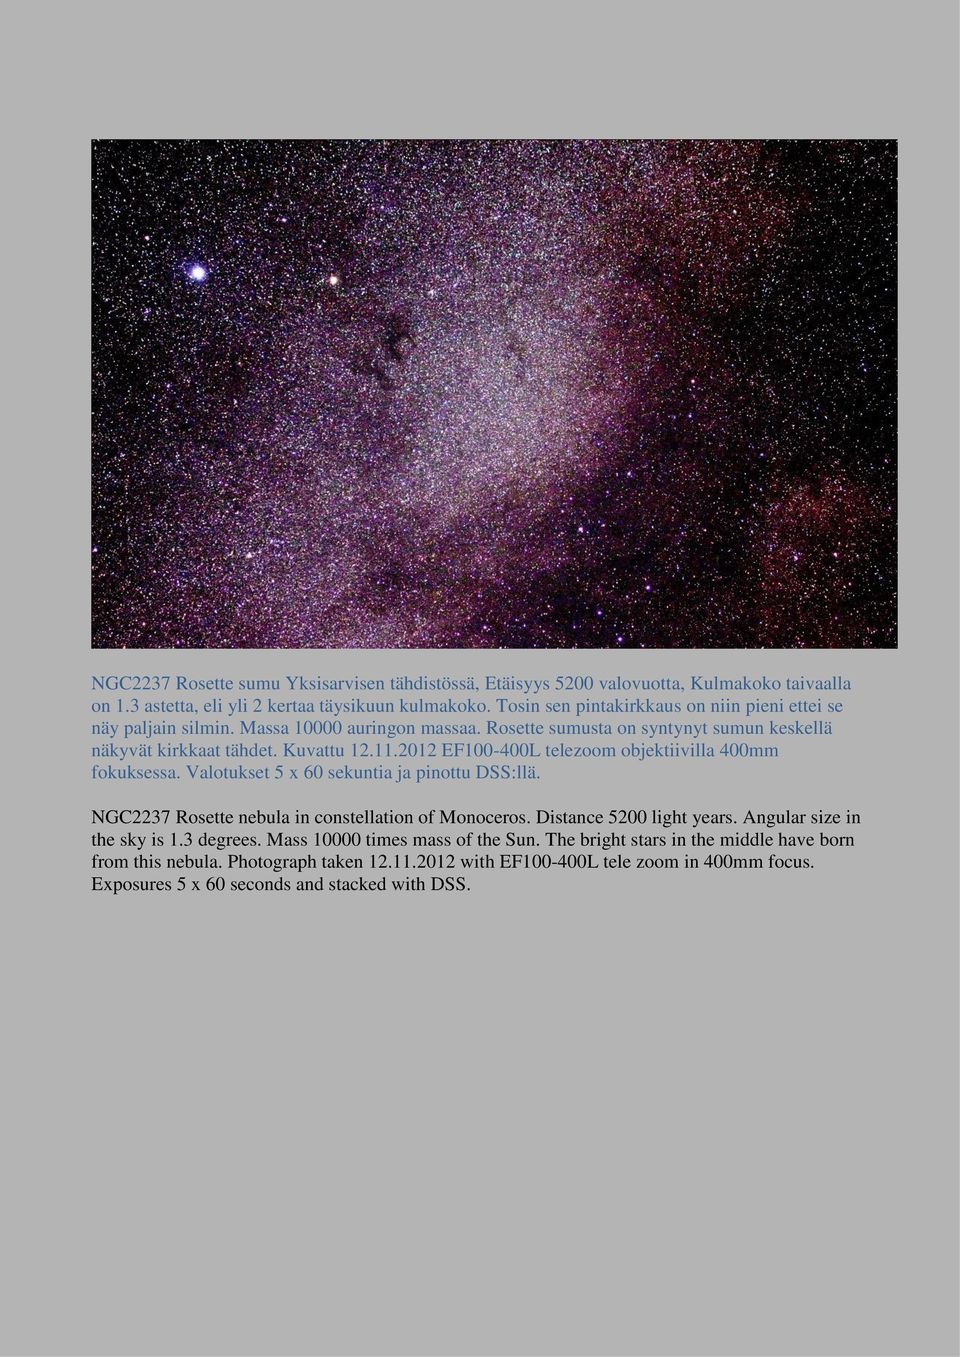 2012 EF100-400L telezoom objektiivilla 400mm fokuksessa. Valotukset 5 x 60 sekuntia ja pinottu DSS:llä. NGC2237 Rosette nebula in constellation of Monoceros. Distance 5200 light years.